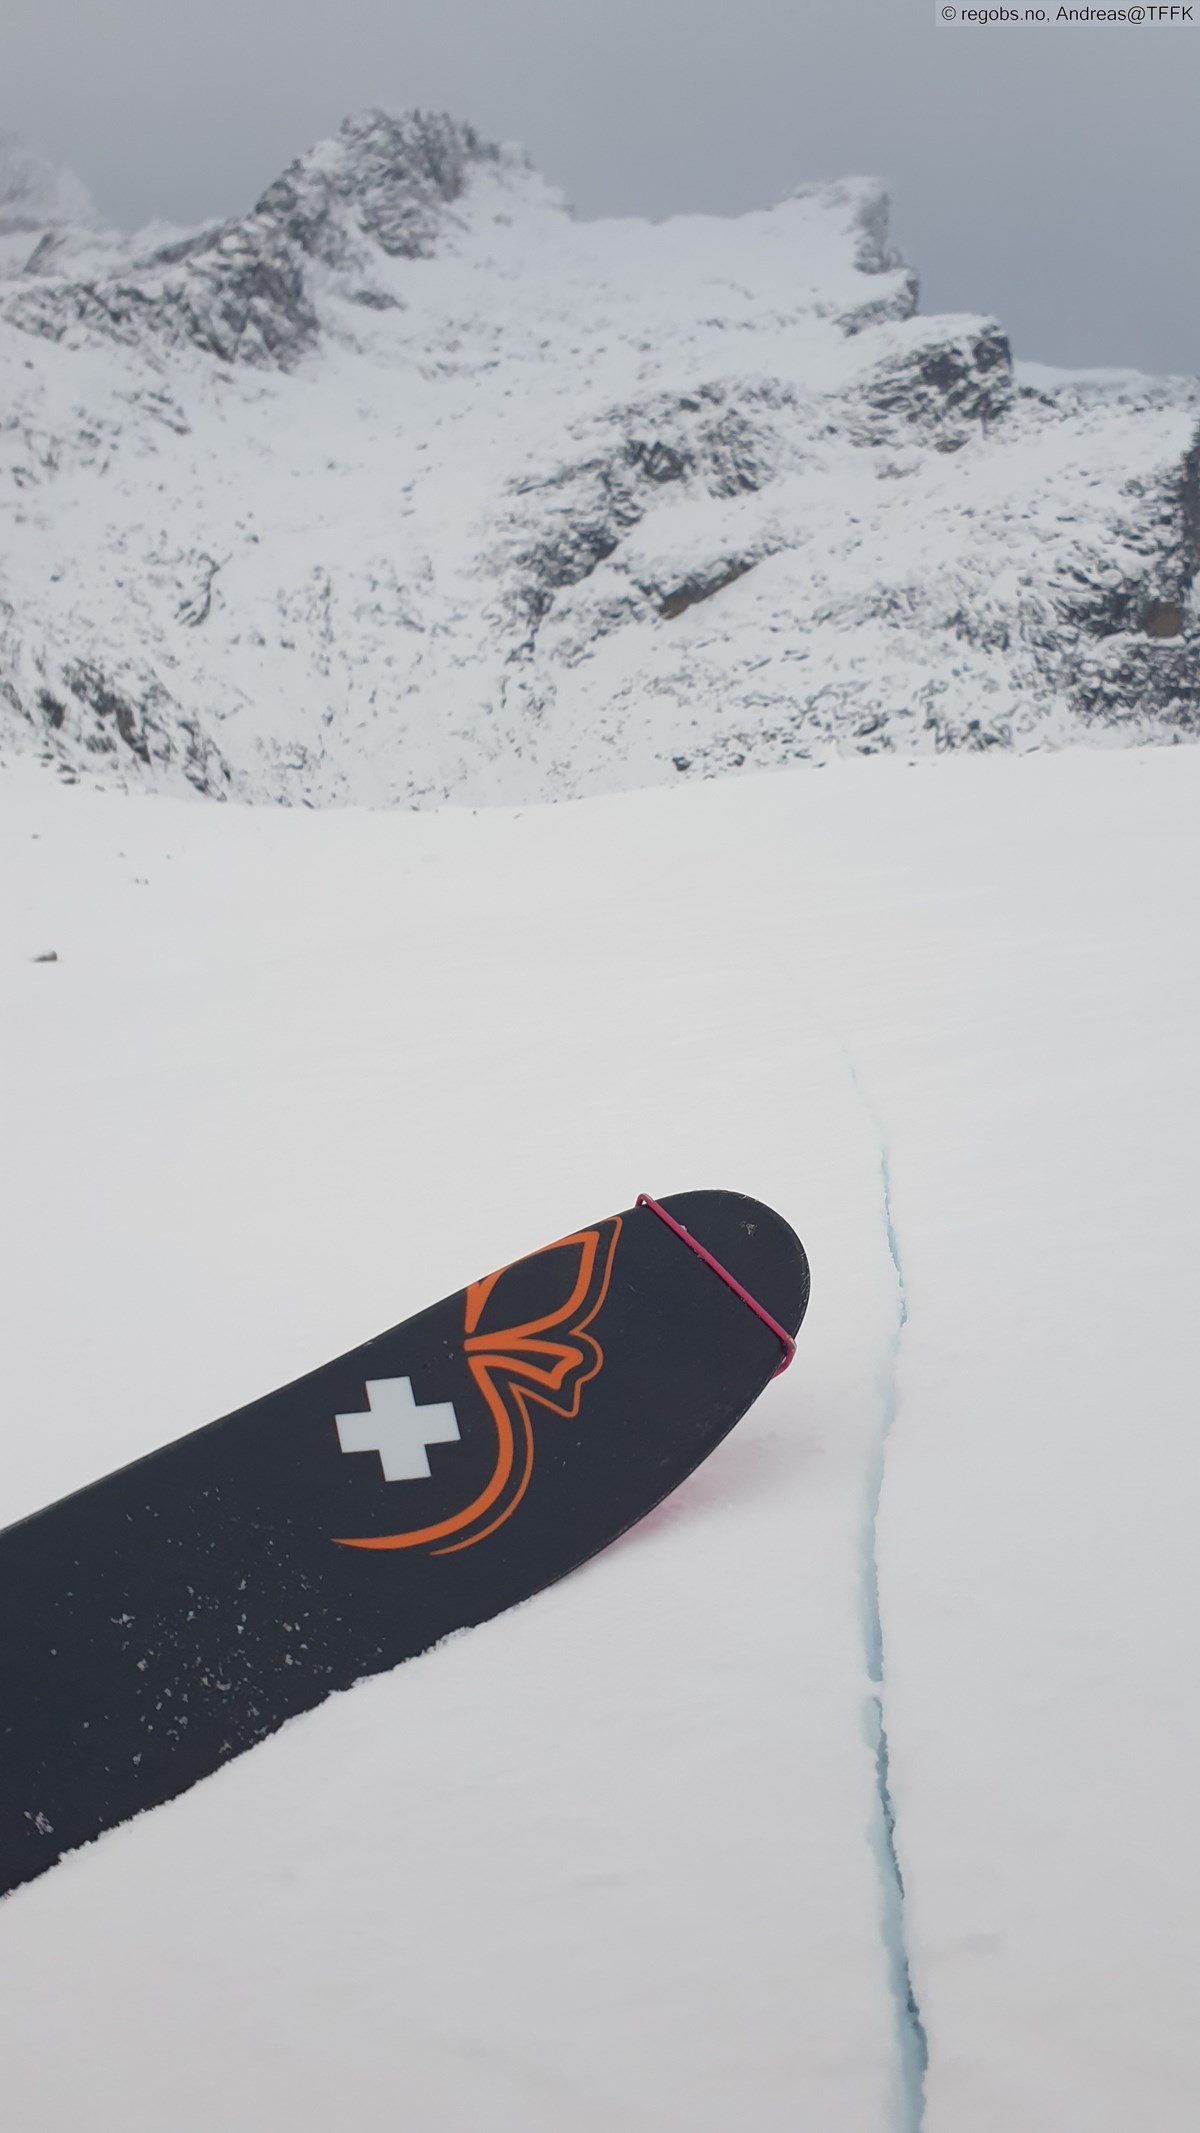 Snødekke med ski og skytende sprekk i snøen.